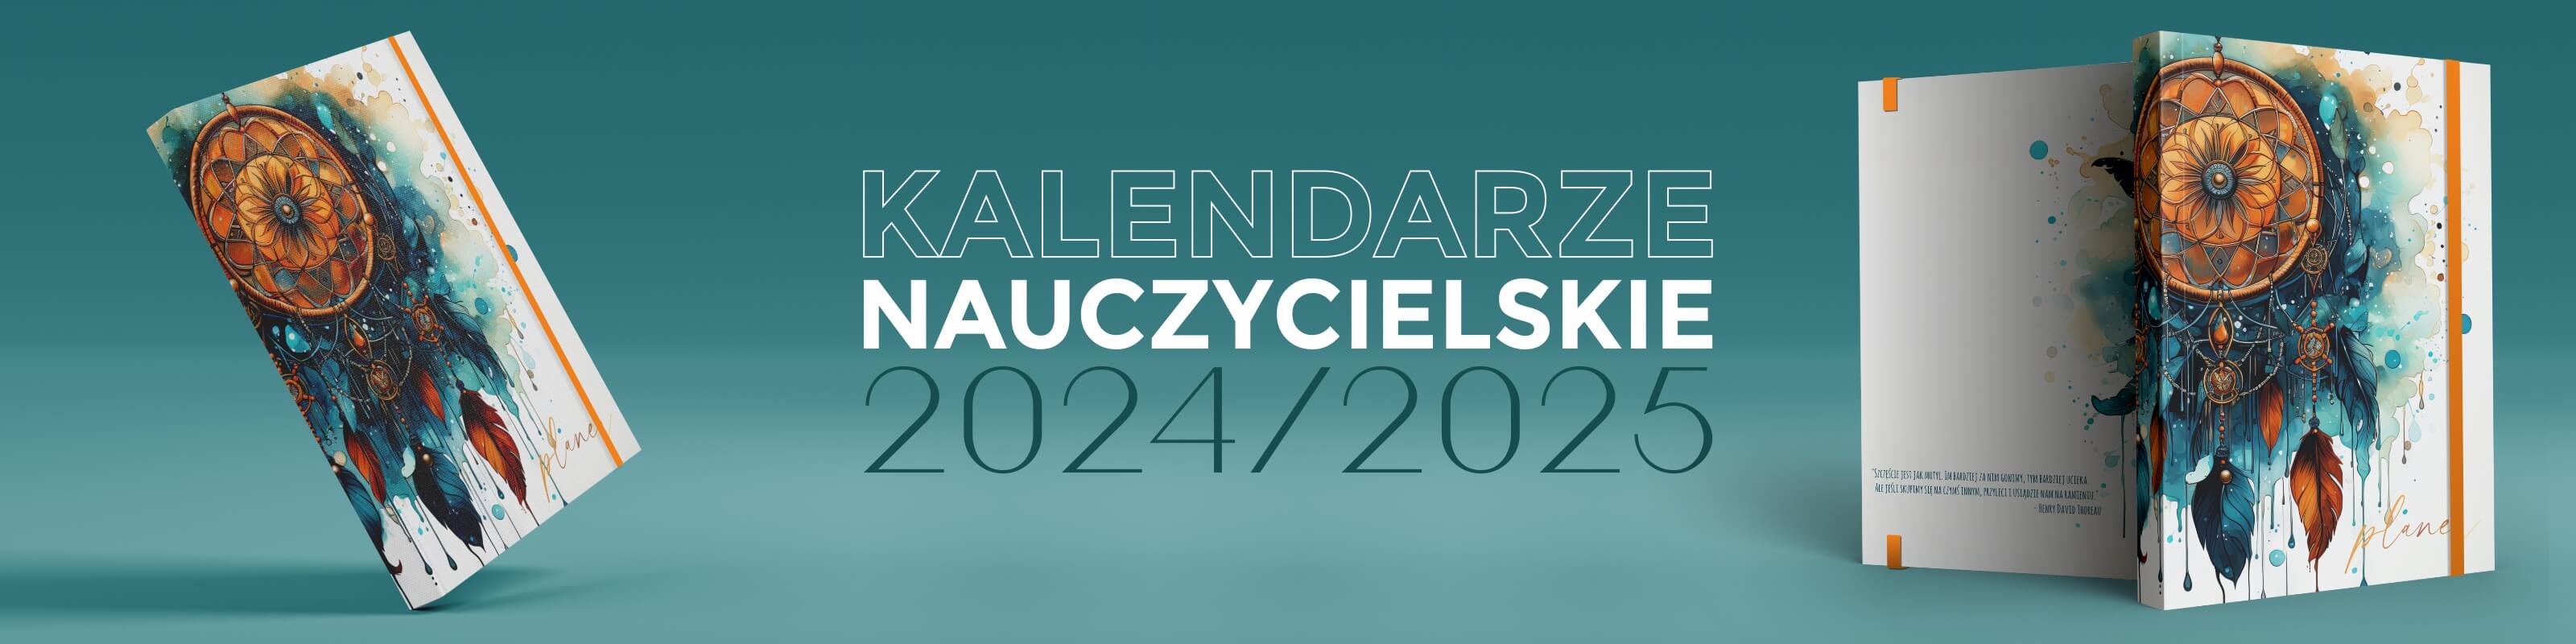 Kalendarze nauczycielskie - Katalog 2022/2023